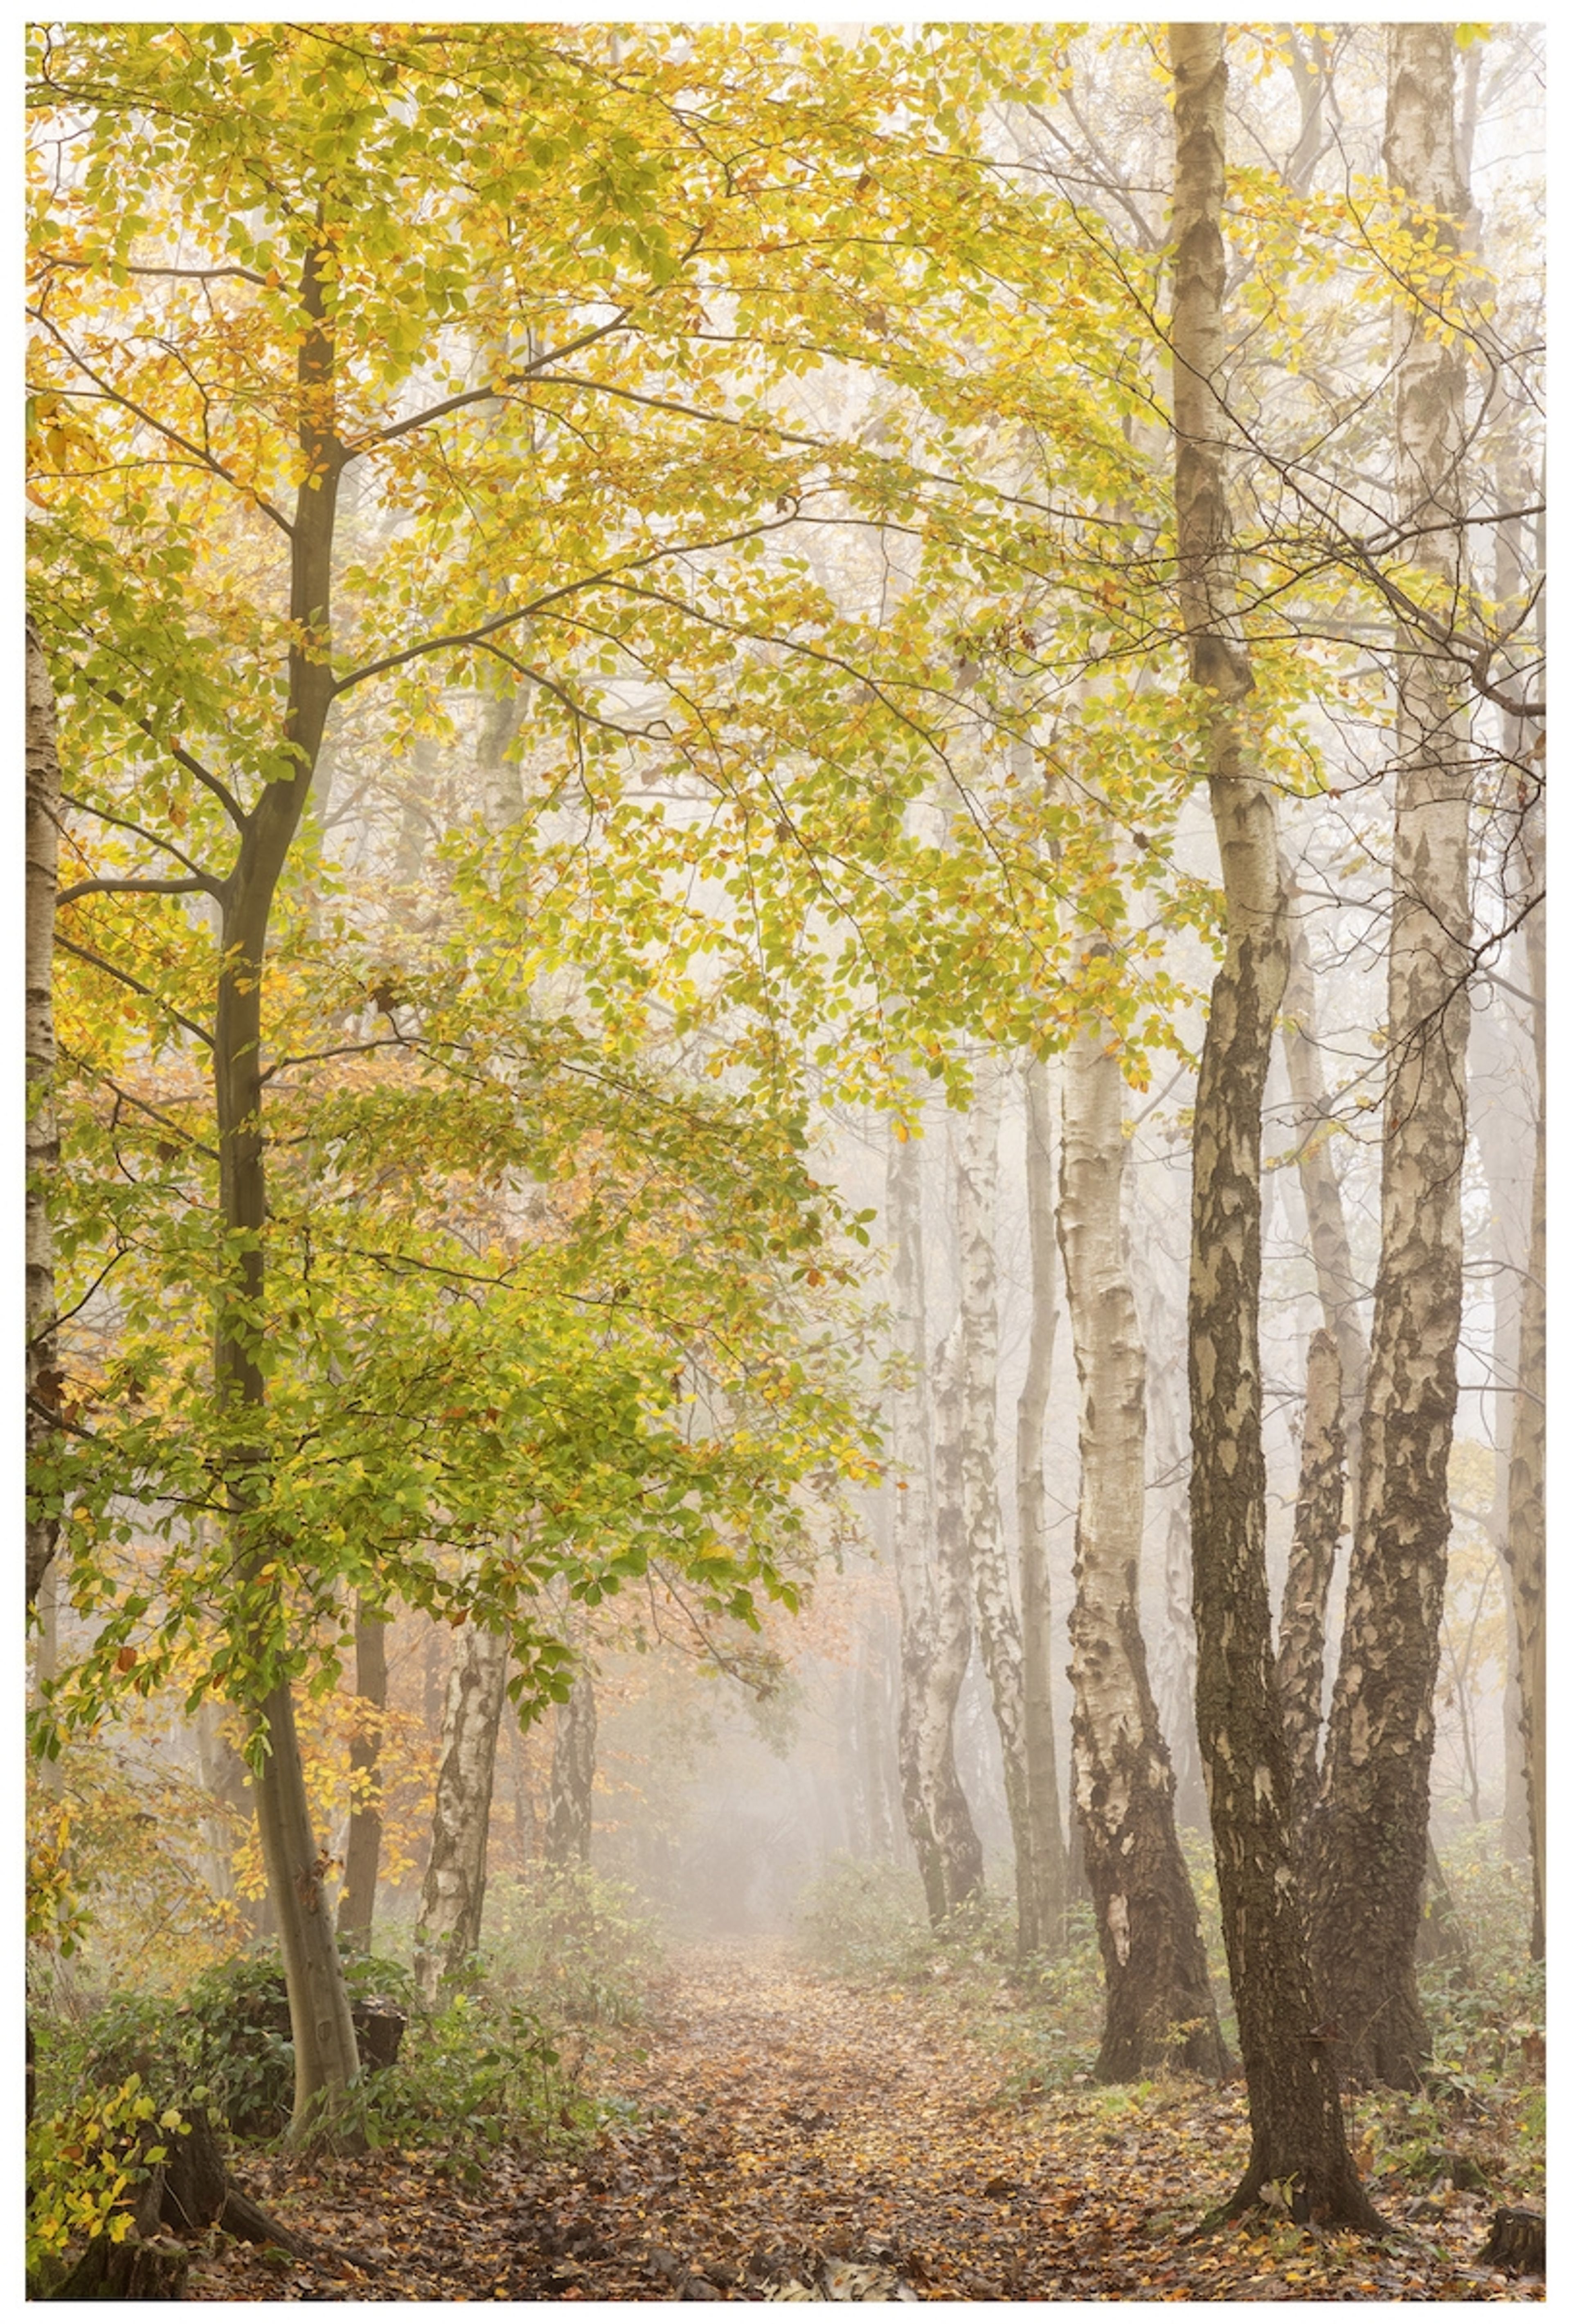 Last of Autumn by Antony Ward